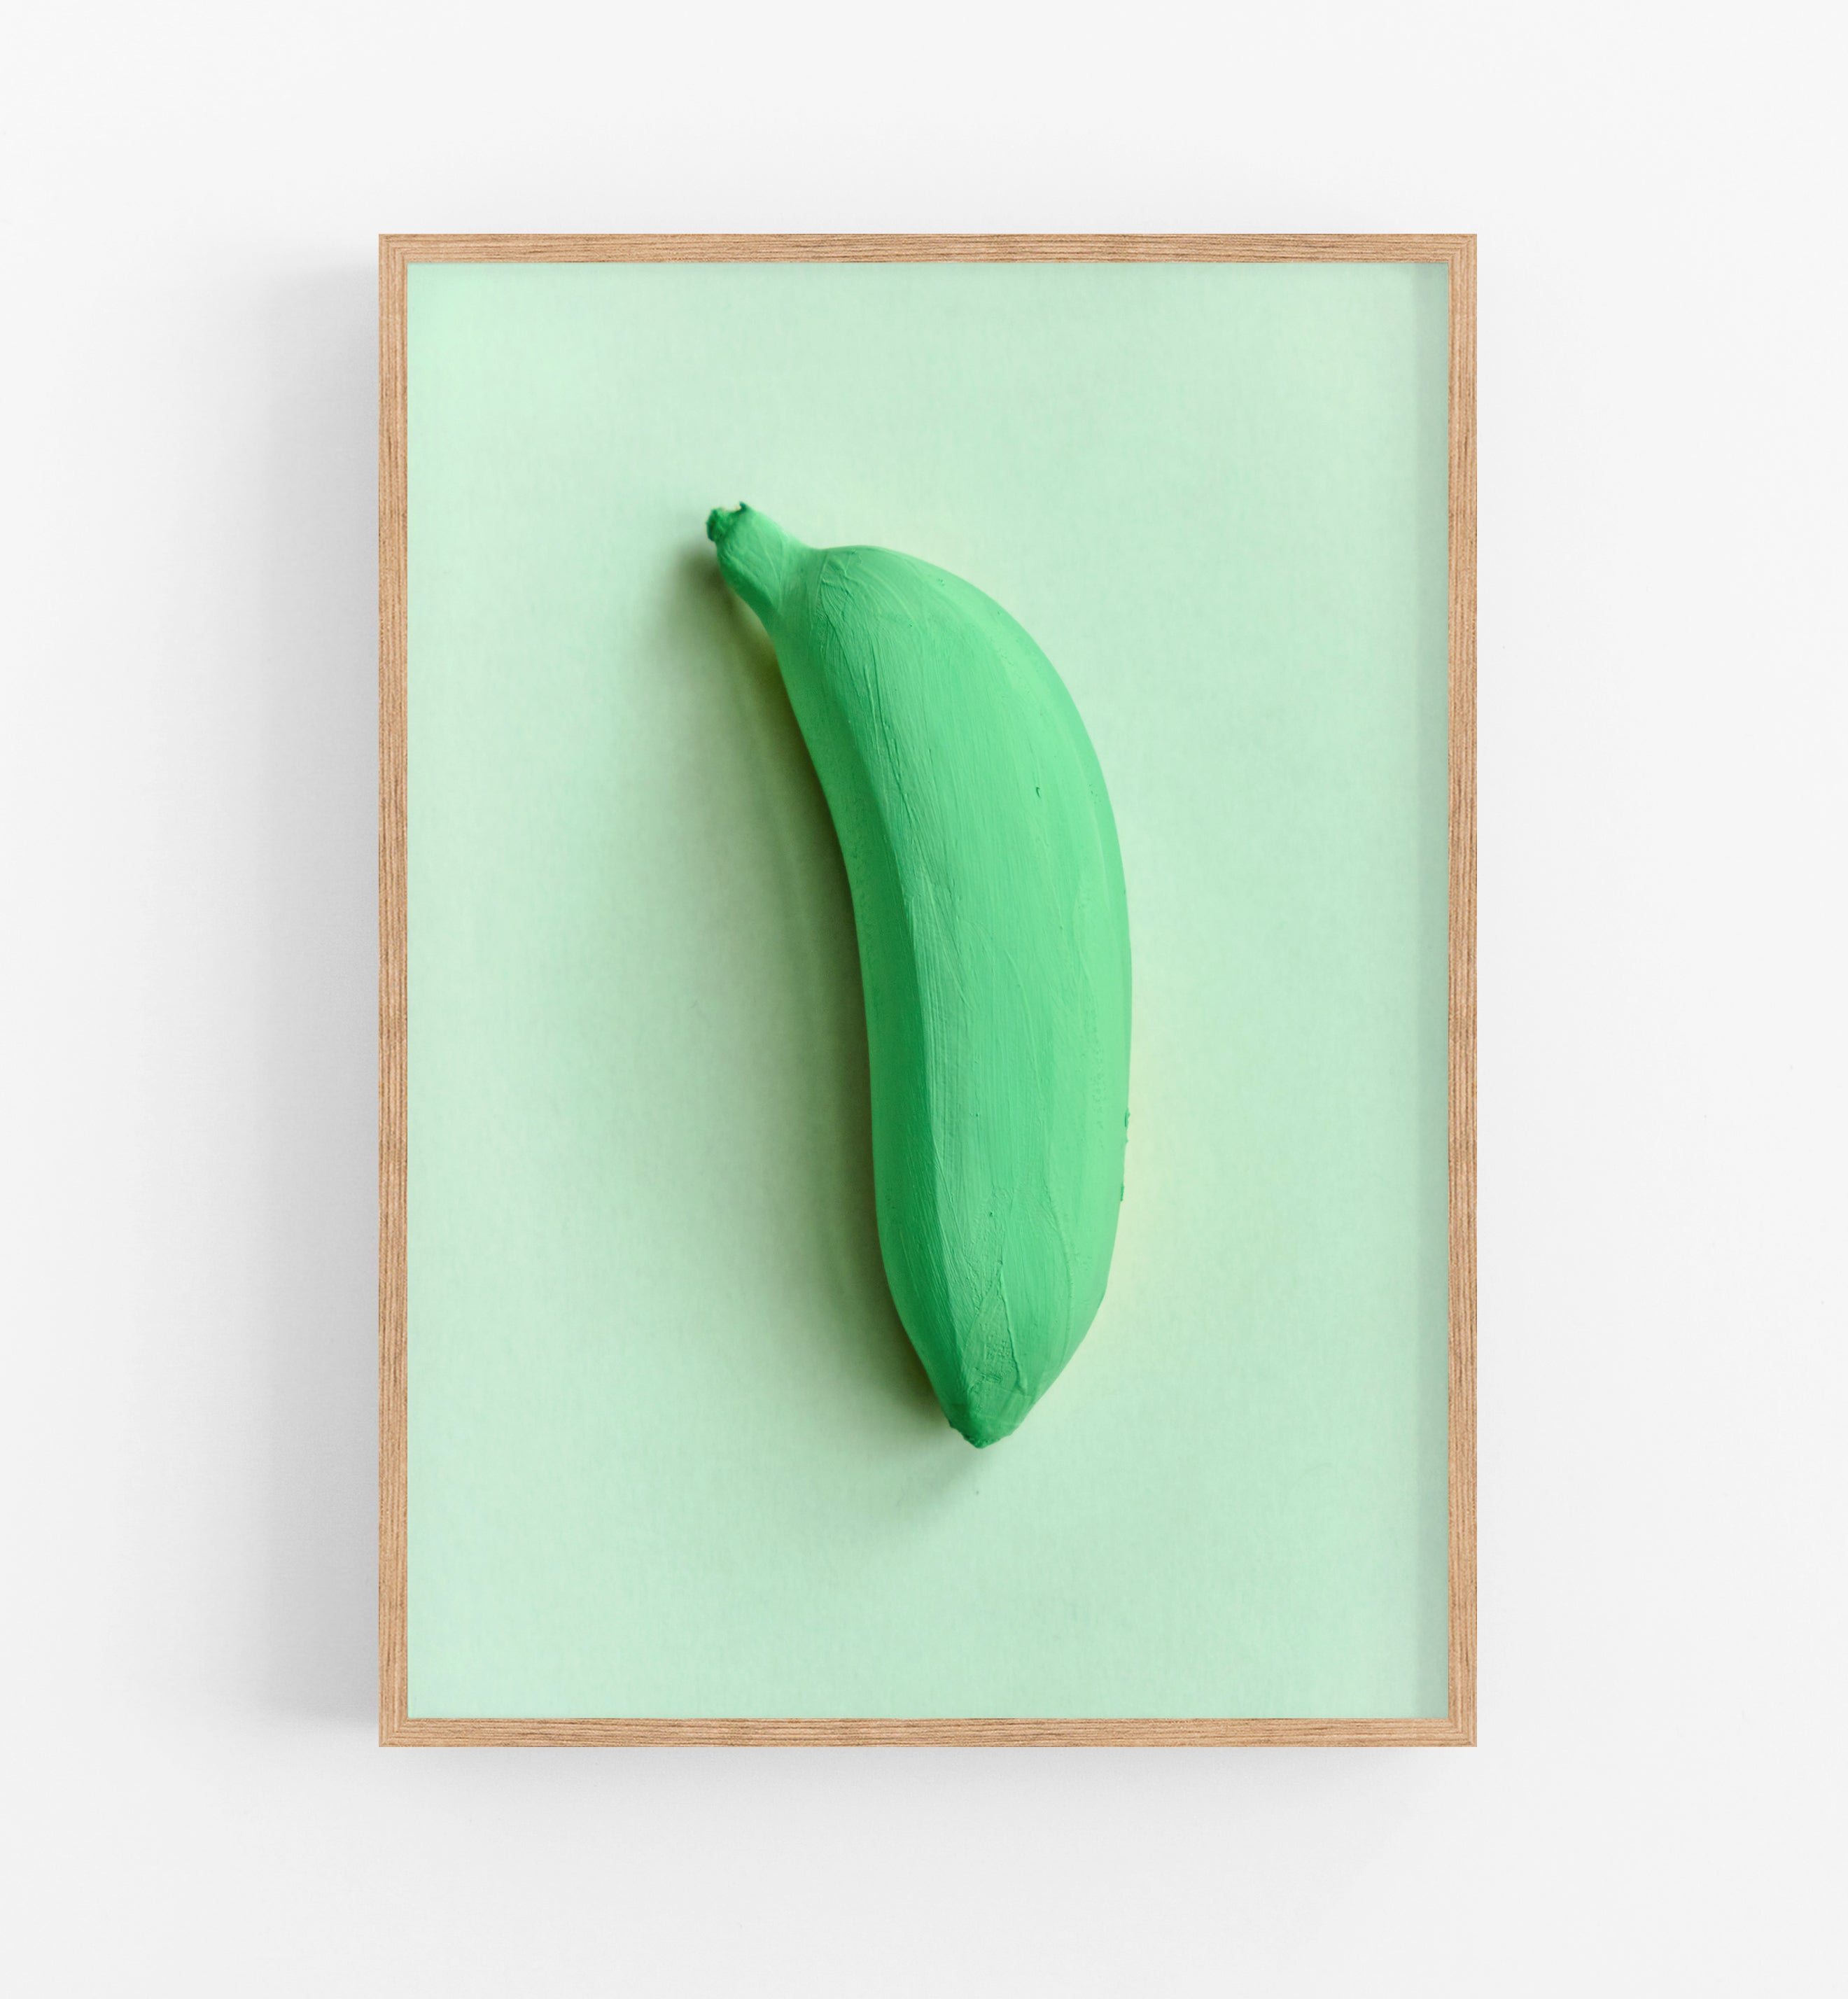 Banana Green